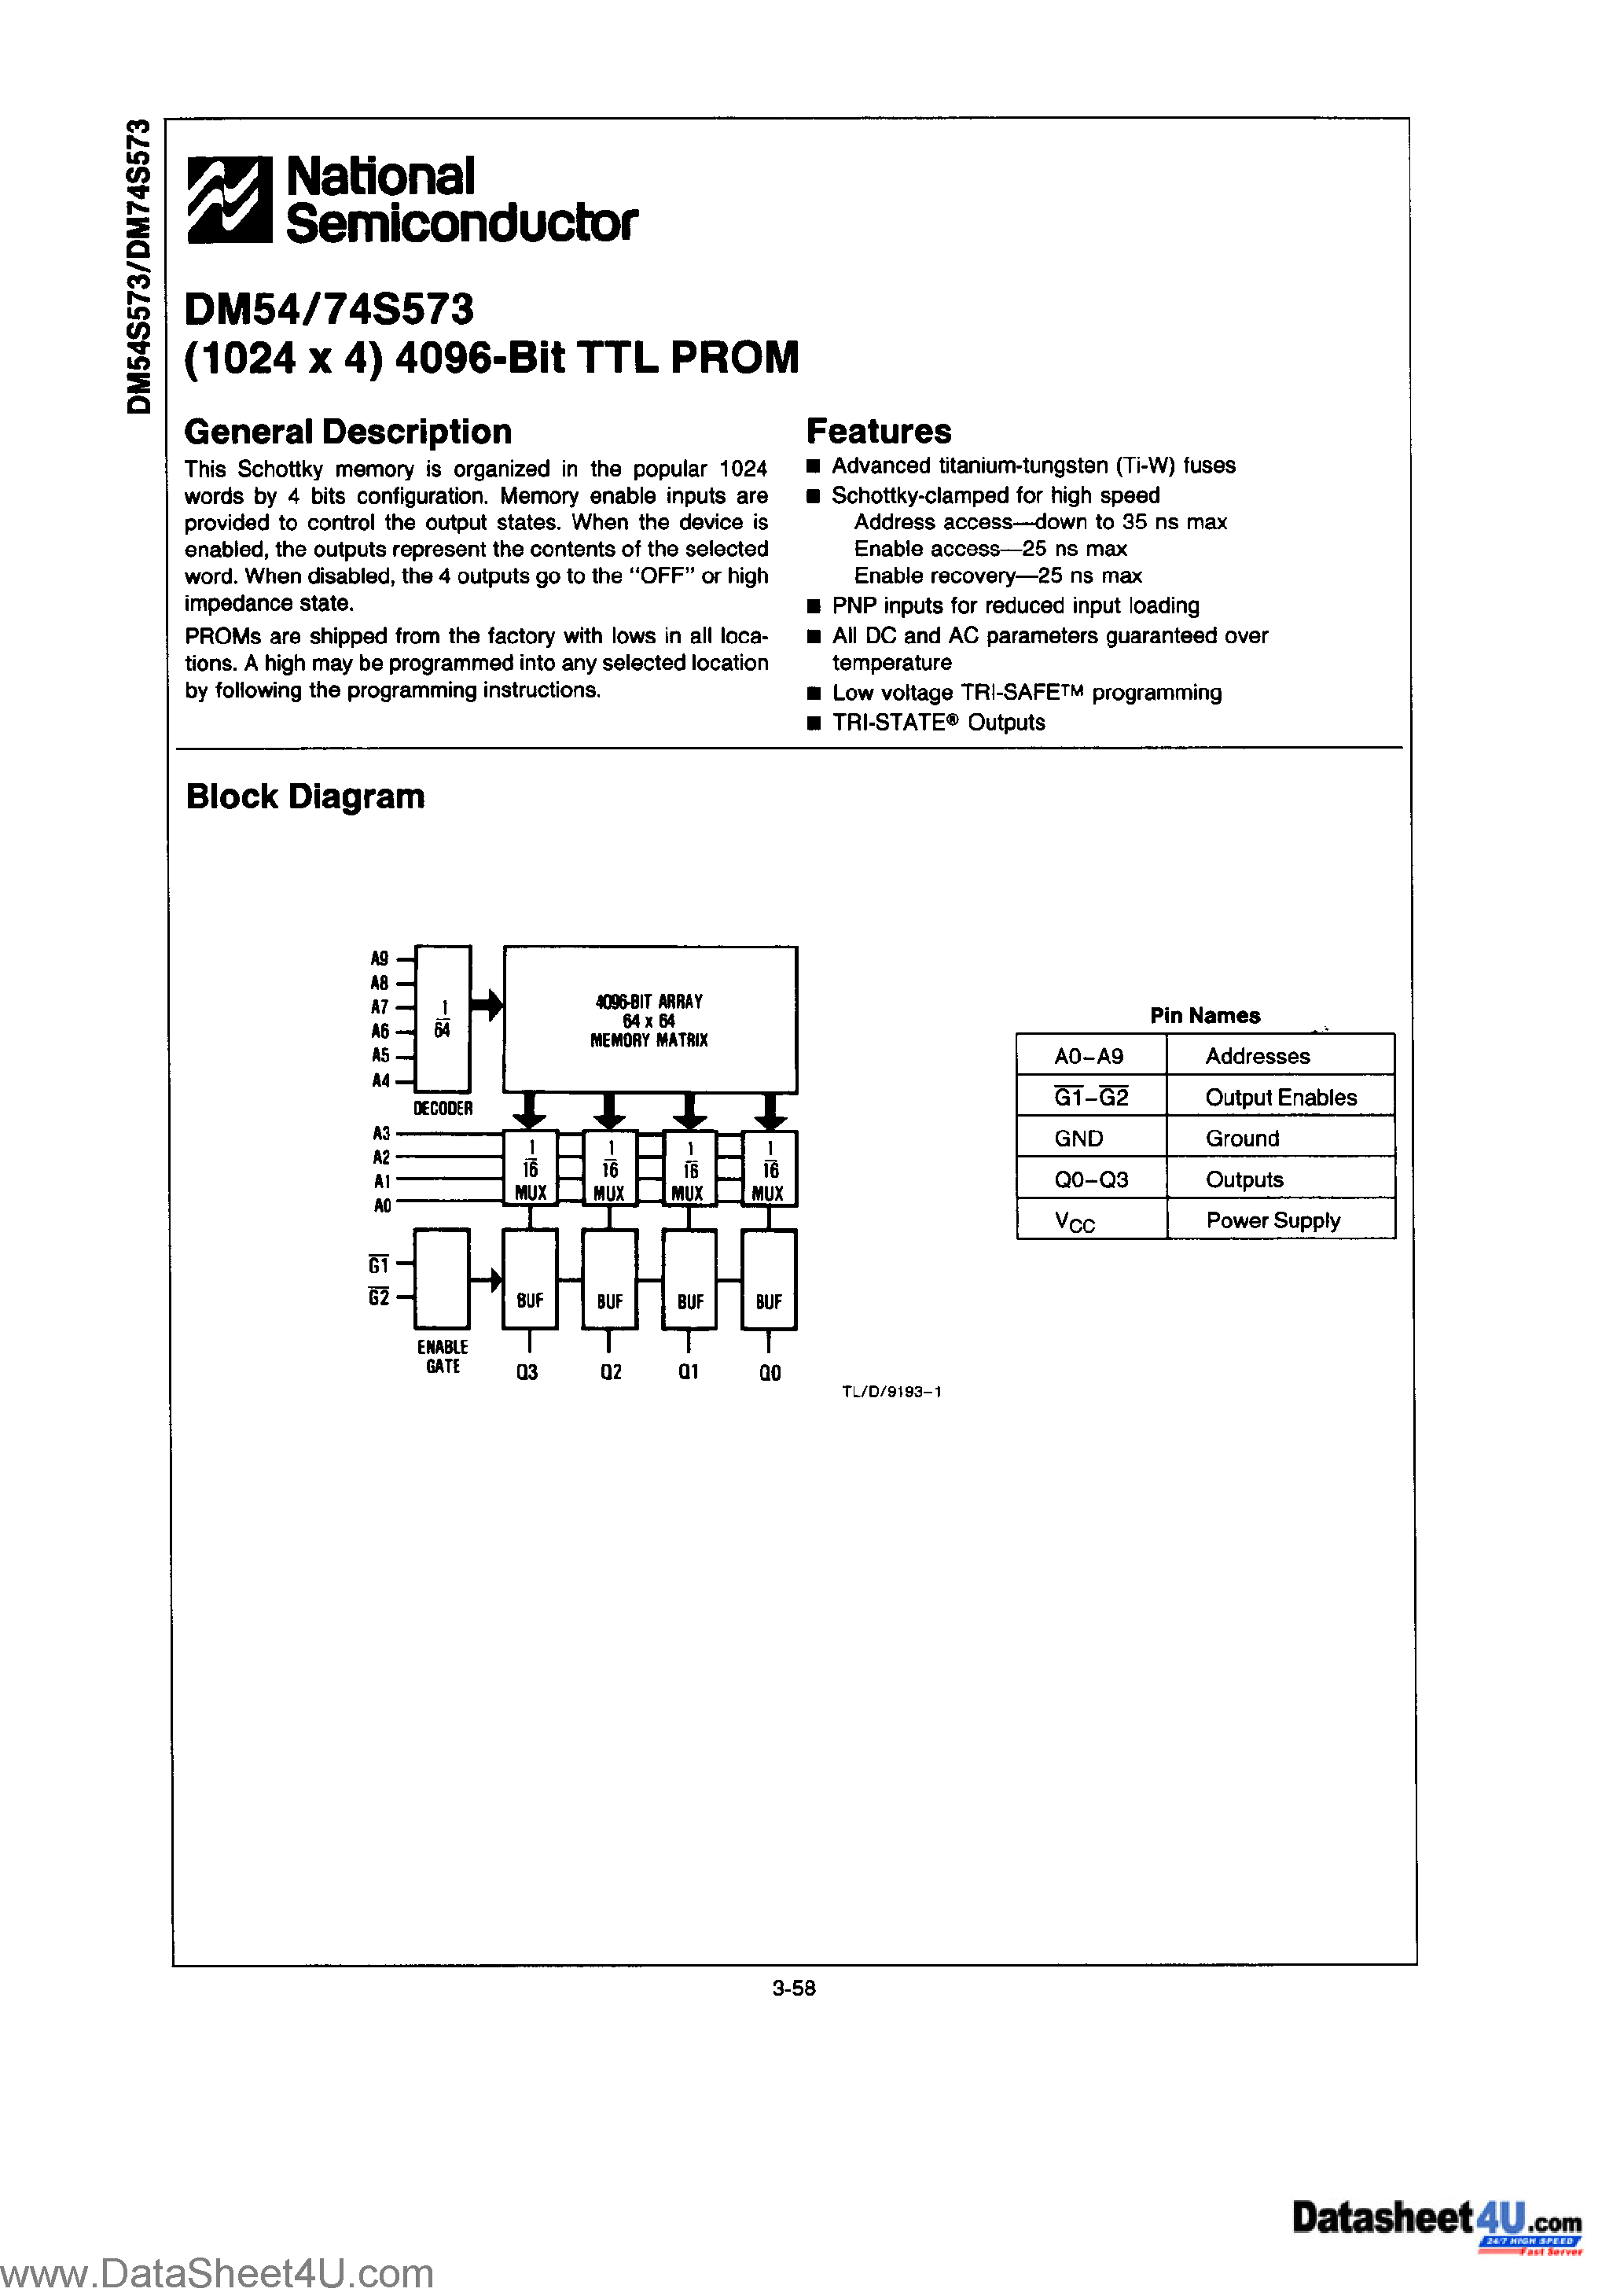 Datasheet DM74S573 - (1024 X 4) 4096-BIT TTL PROM page 1